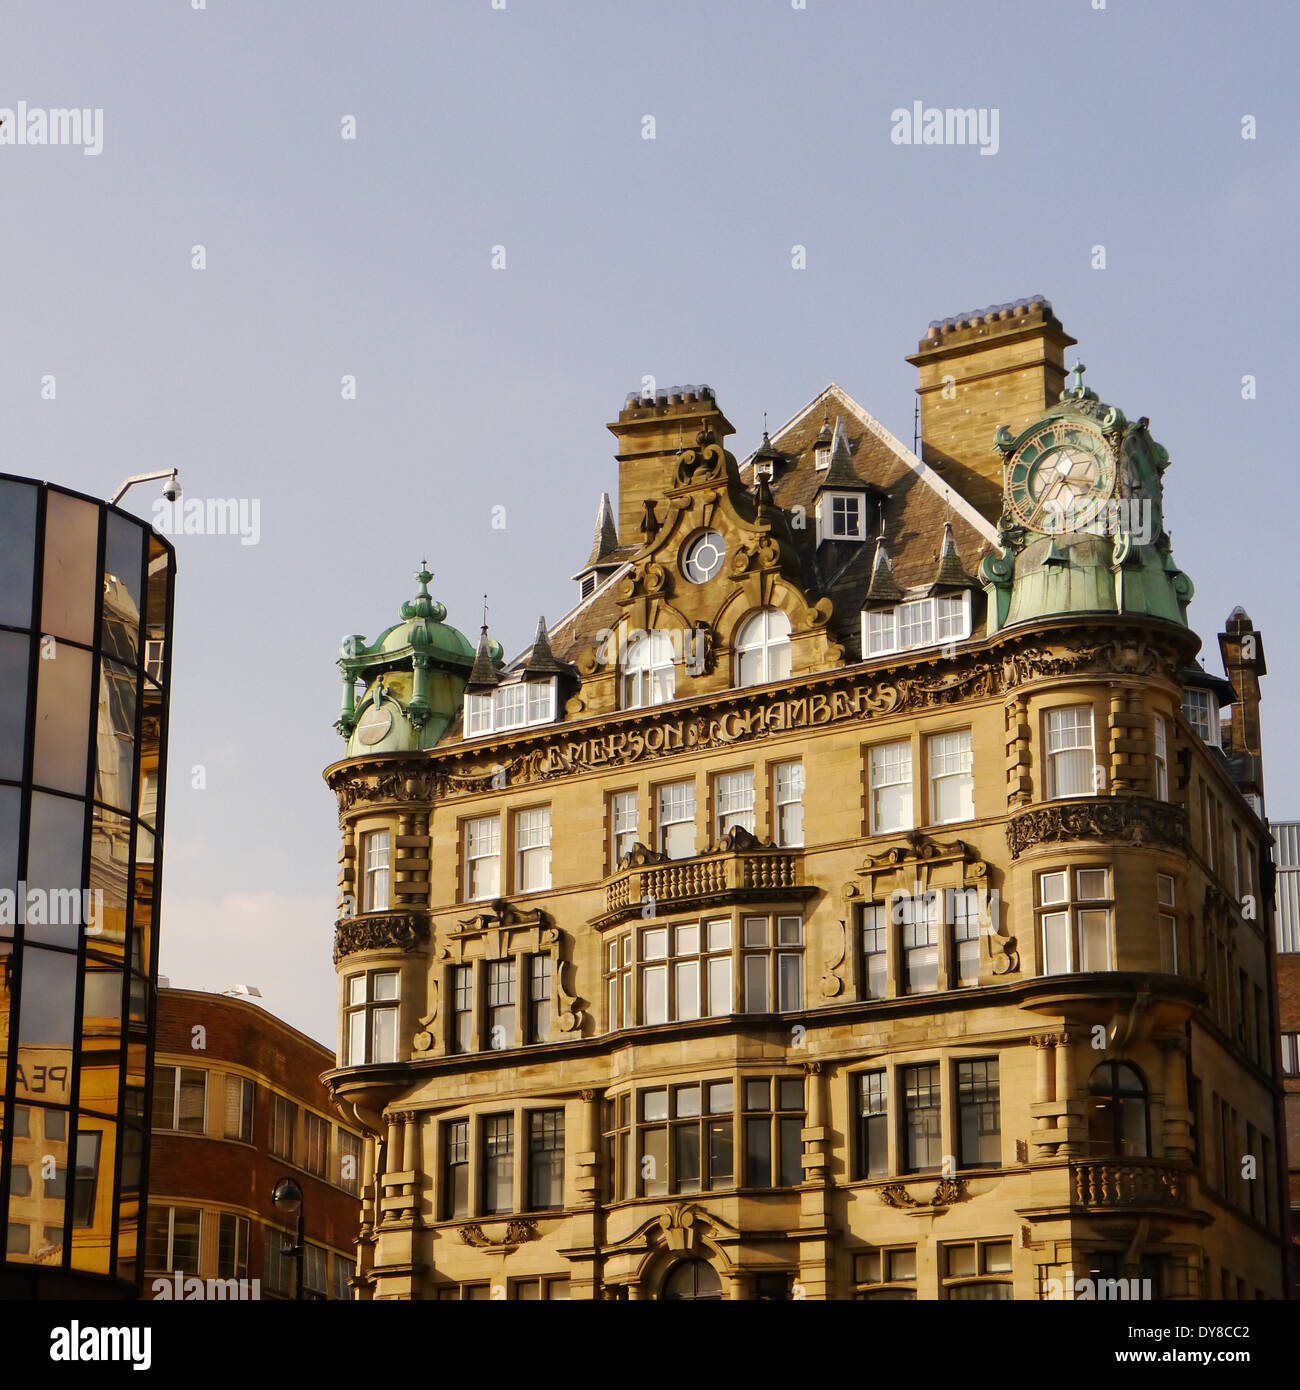 Caractéristiques architecturales de Waterstones, Emmerson Chambers, Newcastle upon Tyne juxtaposée à la réflexion dans un immeuble moderne Banque D'Images